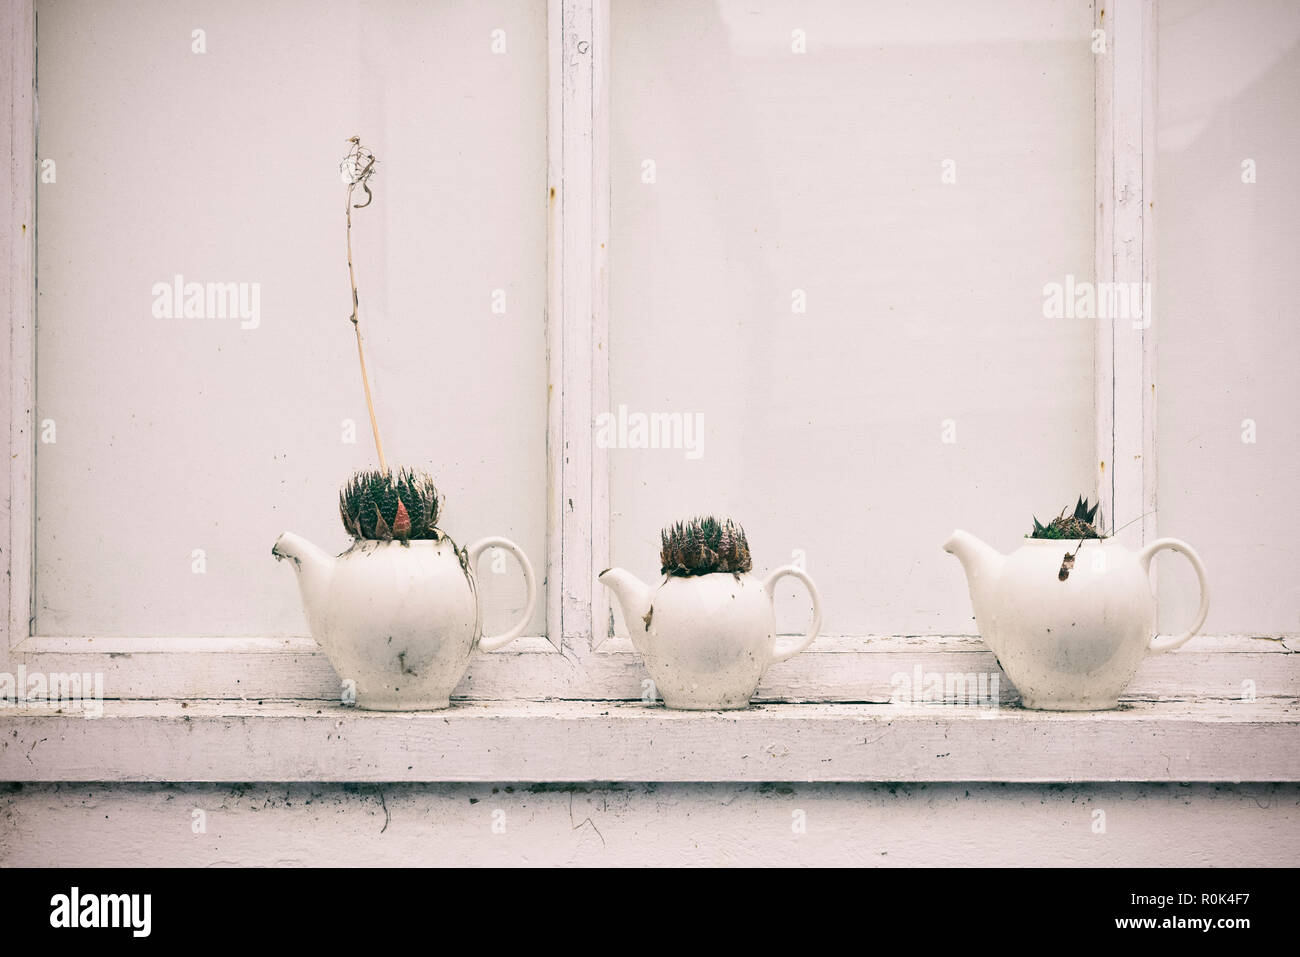 Sukkulenten gepflanzt in Teekannen Stockfoto